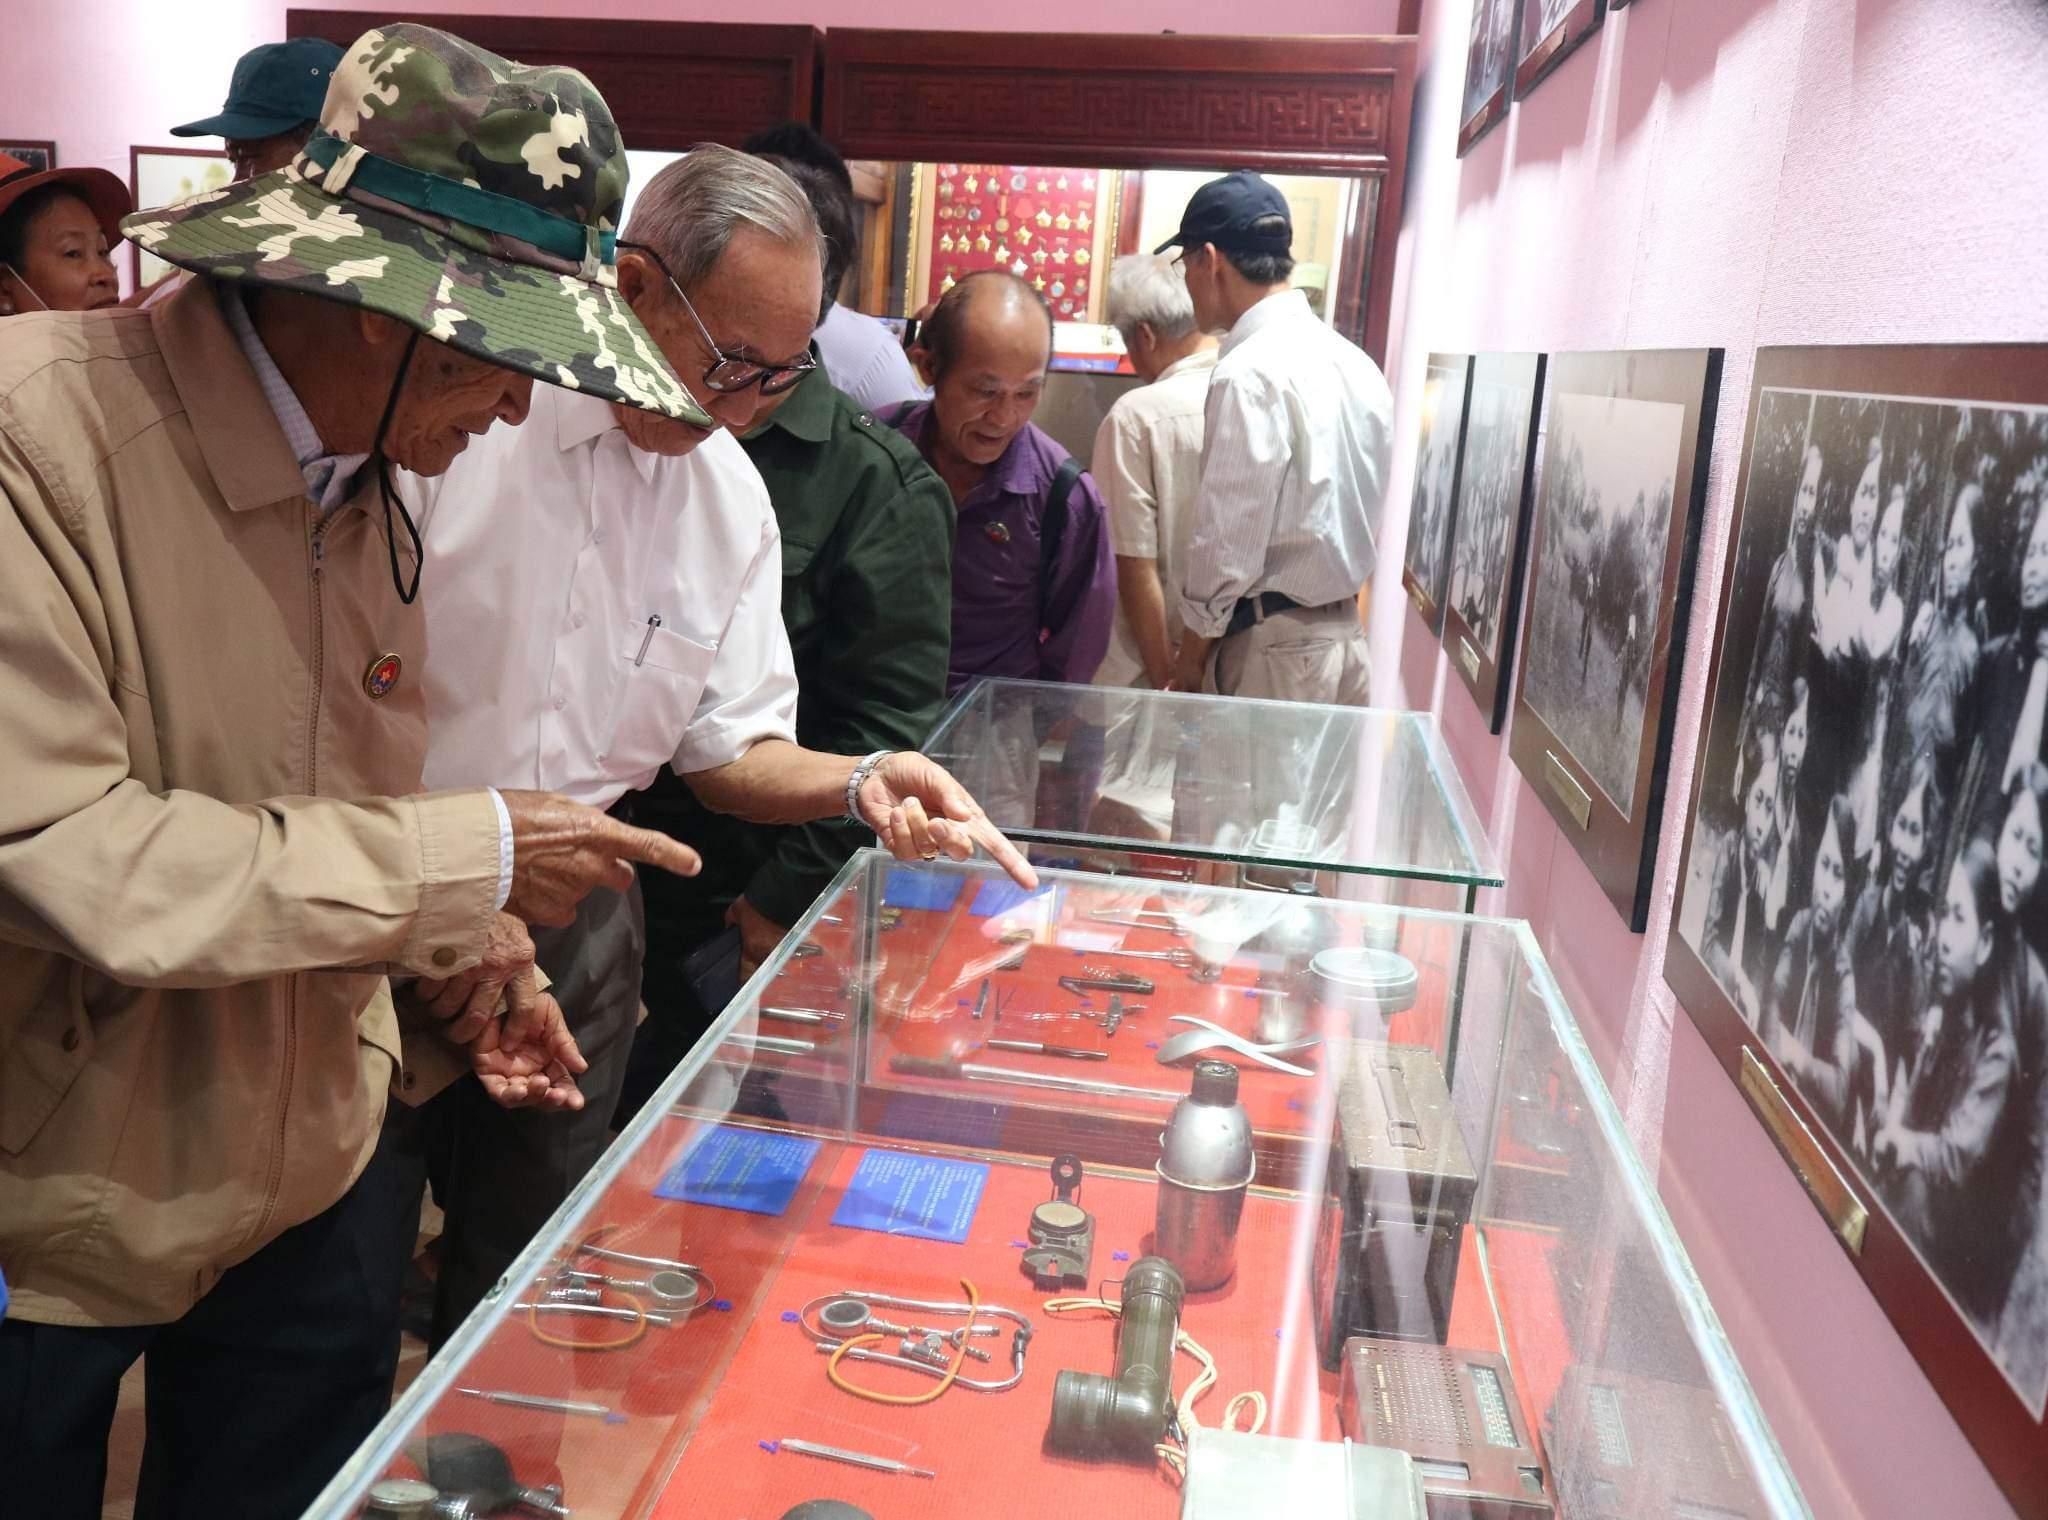 Hàng trăm hiện vật được trưng bày tại nhà lưu niệm Khu di tích Căn cứ Tỉnh uỷ Bình Thuận.